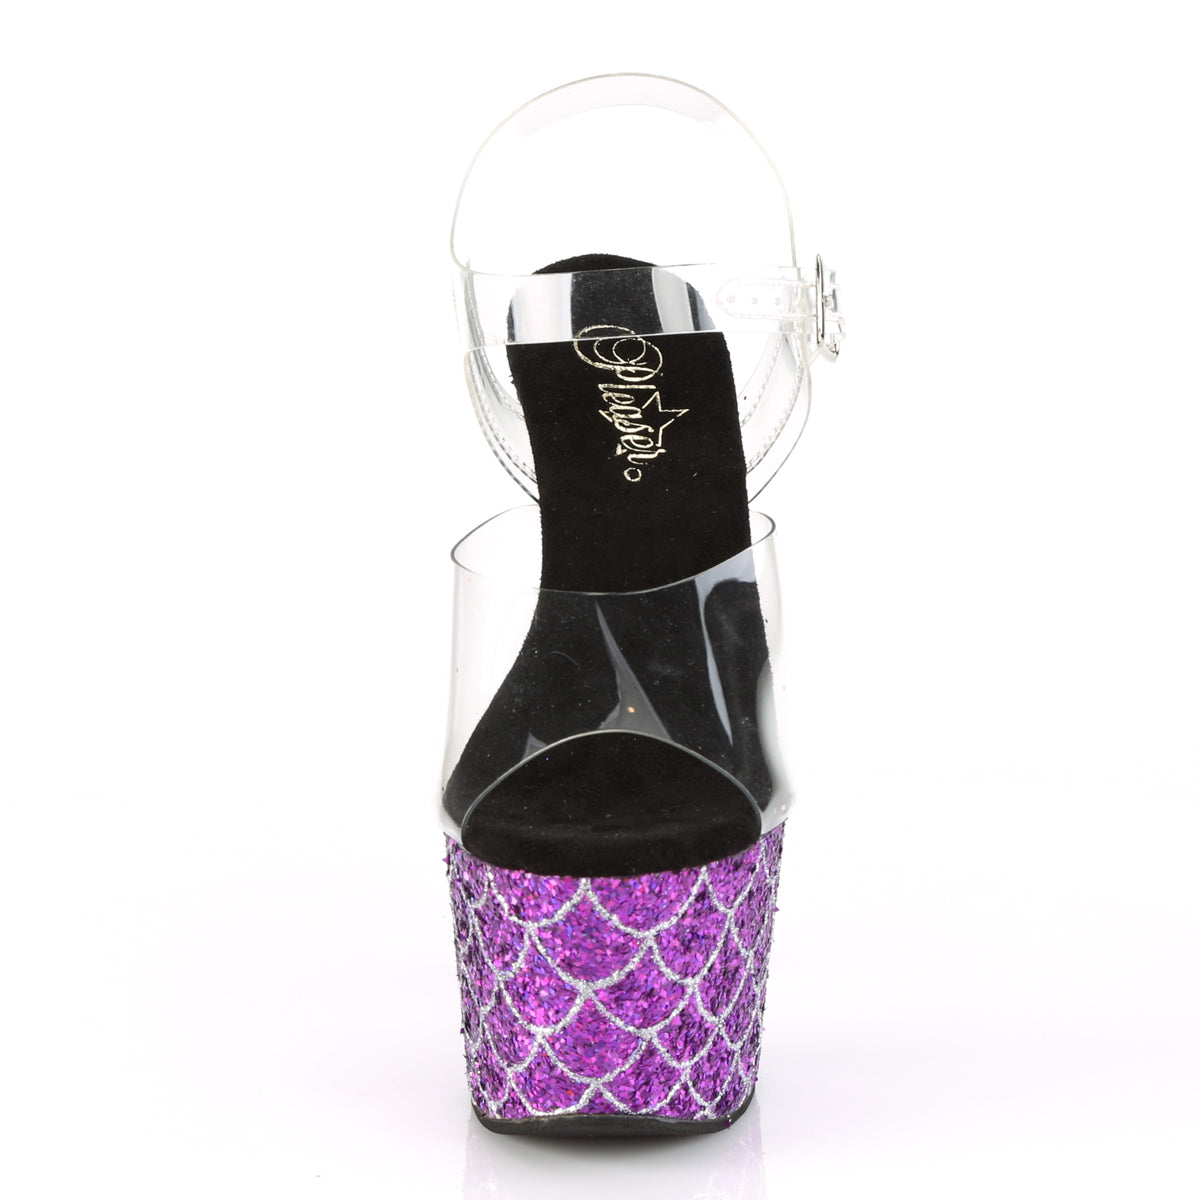 Pleaser Womens Sandals ADORE-708MSLG Clr/Purple Multi Glitter